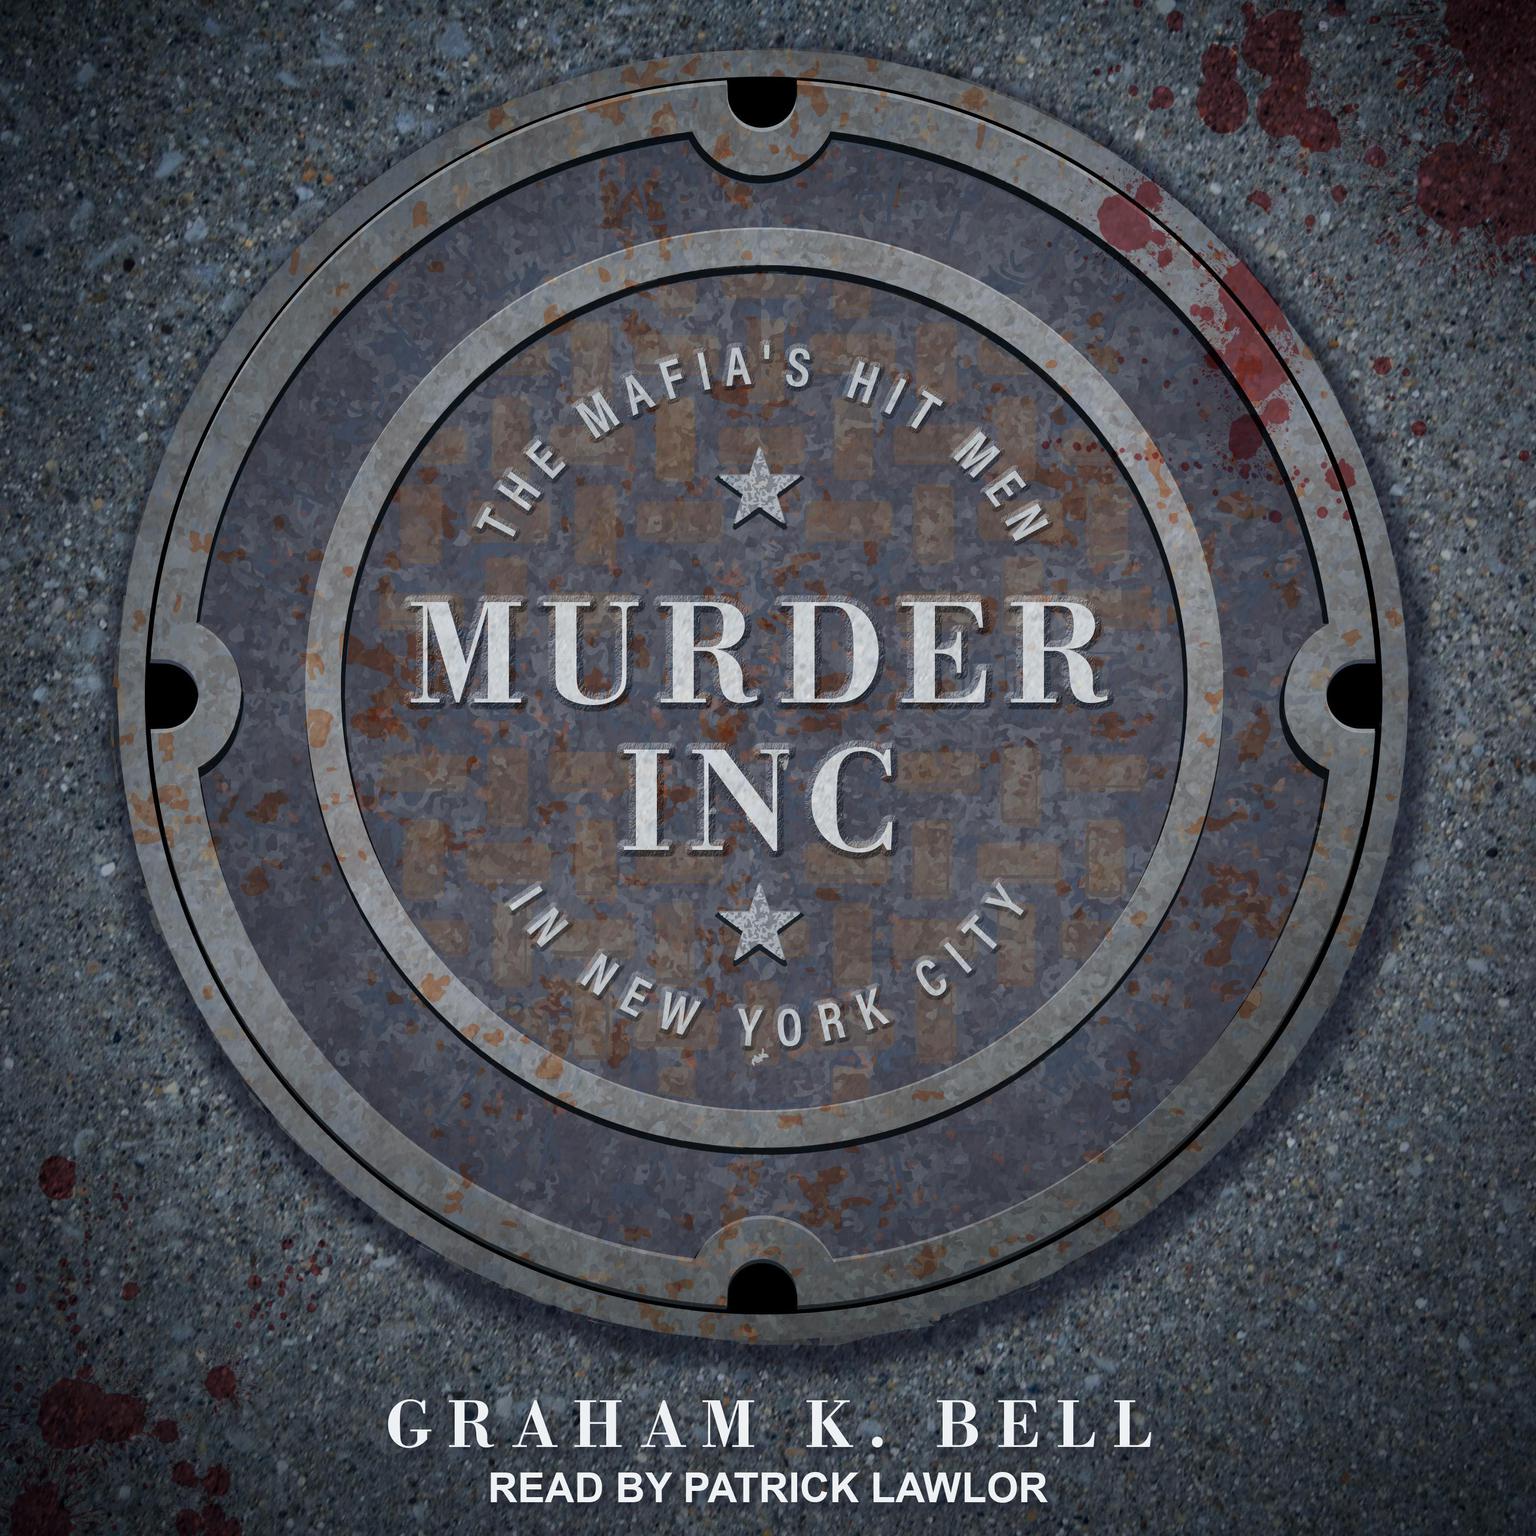 Murder, Inc.: The Mafias Hit Men in New York City Audiobook, by Graham K. Bell